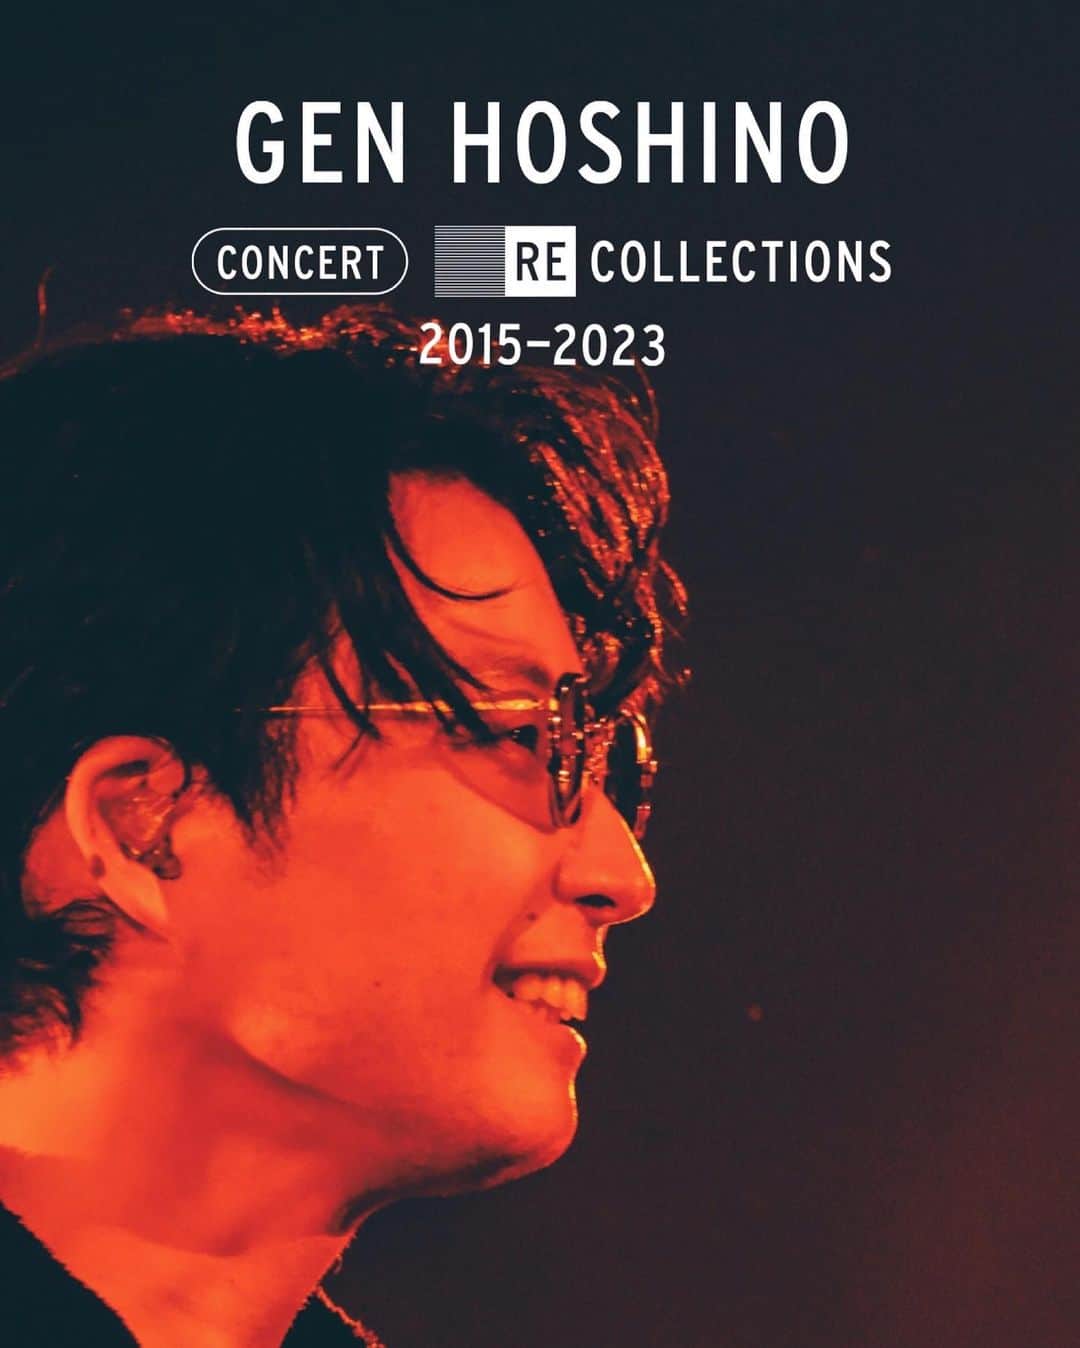 星野源のインスタグラム：「先日ラジオでも予告した大事なお知らせです。Netflixにて、僕のライブ映像集『Gen Hoshino Concert Recollections 2015-2023』が、8月10日から世界配信します。  2015年から2023年の過去のライブパフォーマンスの中から様々な楽曲をまとめたライブ映像集です。武道館での弾き語り、ドームツアー、 10周年記念の配信ライブ、そして最新の「Reassembly」まで、6公演の中から全16曲を収録しています。  その後配信される “LIGHTHOUSE”、既にNetflixで観られる『POP VIRUS in 東京ドーム』と共に楽しんでいただければ幸いです。  え…？ ニセさんのライブ？ いや、流石にNetflixでニセさんは入れてもらえないんじゃないですかね…。  My video anthology, "Gen Hoshino Concert Recollections 2015-2023," will be available worldwide on Netflix starting on August 10. It is a collection of video footage depicting select songs from my 2015-2023 concert performances. It includes all 16 songs featured across six events and tours, including my solo performance at Budokan, my POP VIRUS Dome Tour, the 10th-anniversary live performance held for everyone staying indoors during the COVID-19 pandemic, and my latest event, "Reassembly." It will be released just ahead of "LIGHTHOUSE"! Enjoy!  我的現場演出影片精選集“Gen Hoshino Concert Recollections 2015-2023” 將於8月10日起在Netflix上全球播放。 從2015 年~2023 年的現場表演歌曲精選出的影片集。收錄了武道館的演唱、5大巨蛋巡迴、為因疫情困在室內的大家舉辦的10週年紀念直播、以及最新的《Reassembly》等等 6場演出中選出的全16首歌曲。 比《LIGHTHOUSE》先前一步開始播放! 敬請期待!   넷플릭스에서, 저의 라이브 영상집 「Gen Hoshino Concert Recollections 2015-2023」이, 8월 10일부터 전세계에 공개됩니다. 2015년~2023년 라이브 퍼포먼스 중 다양한 음악을 엄선한 라이브 영상집입니다. 일본 부도칸에서의 낭송과 5대 돔 투어, 코로나 사태로 실내에 있는 여러분을 향해 개최한 10주년 기념 온라인 라이브, 그리고 최신 「Reassembly」까지, 여섯번의 공연 중에서 총 16곡이 수록되어 있습니다. "LIGHT HOUSE"보다 한 발 앞서 출시합니다!기대해주세요.  #Netflix #星野源 #GenHoshino」